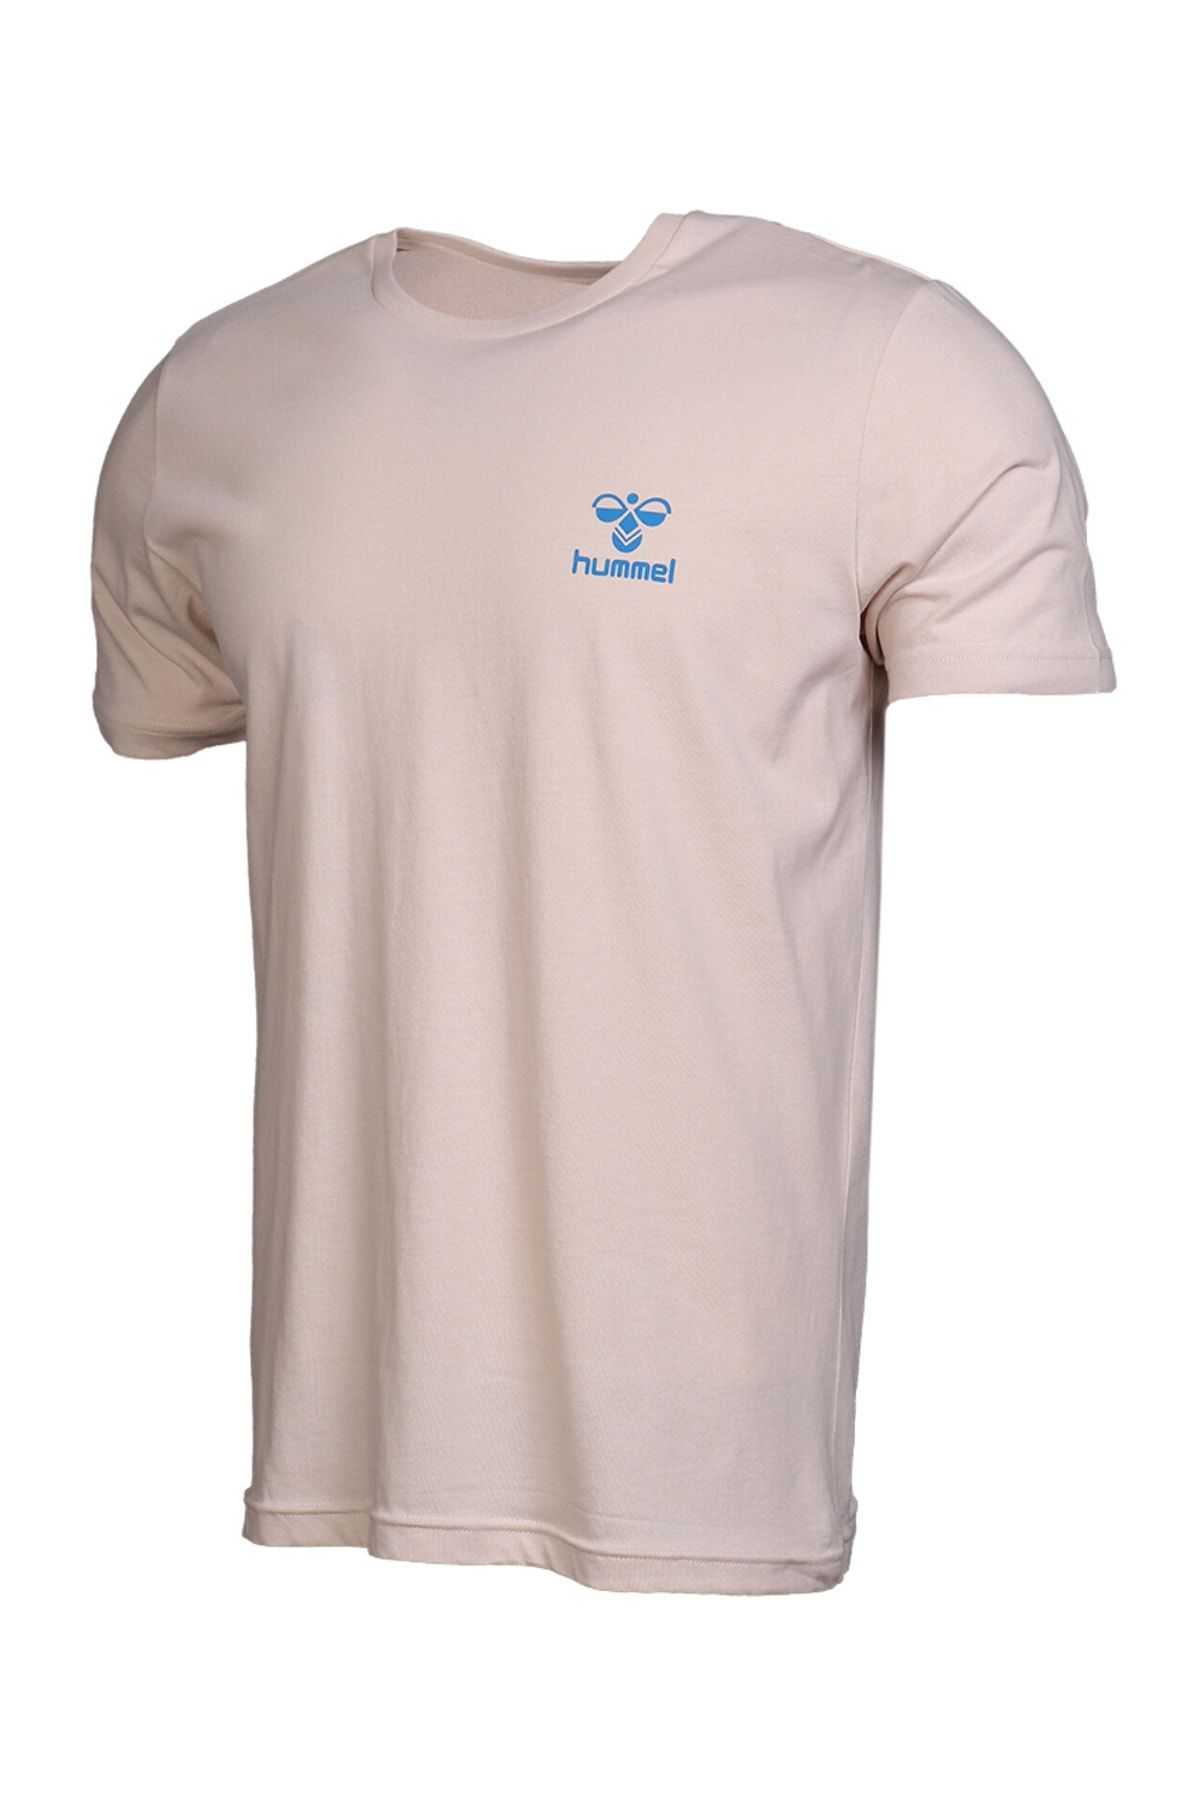 Beige Sleeve - Trendyol Men\'s HUMMEL T-Shirt - Short Kevins